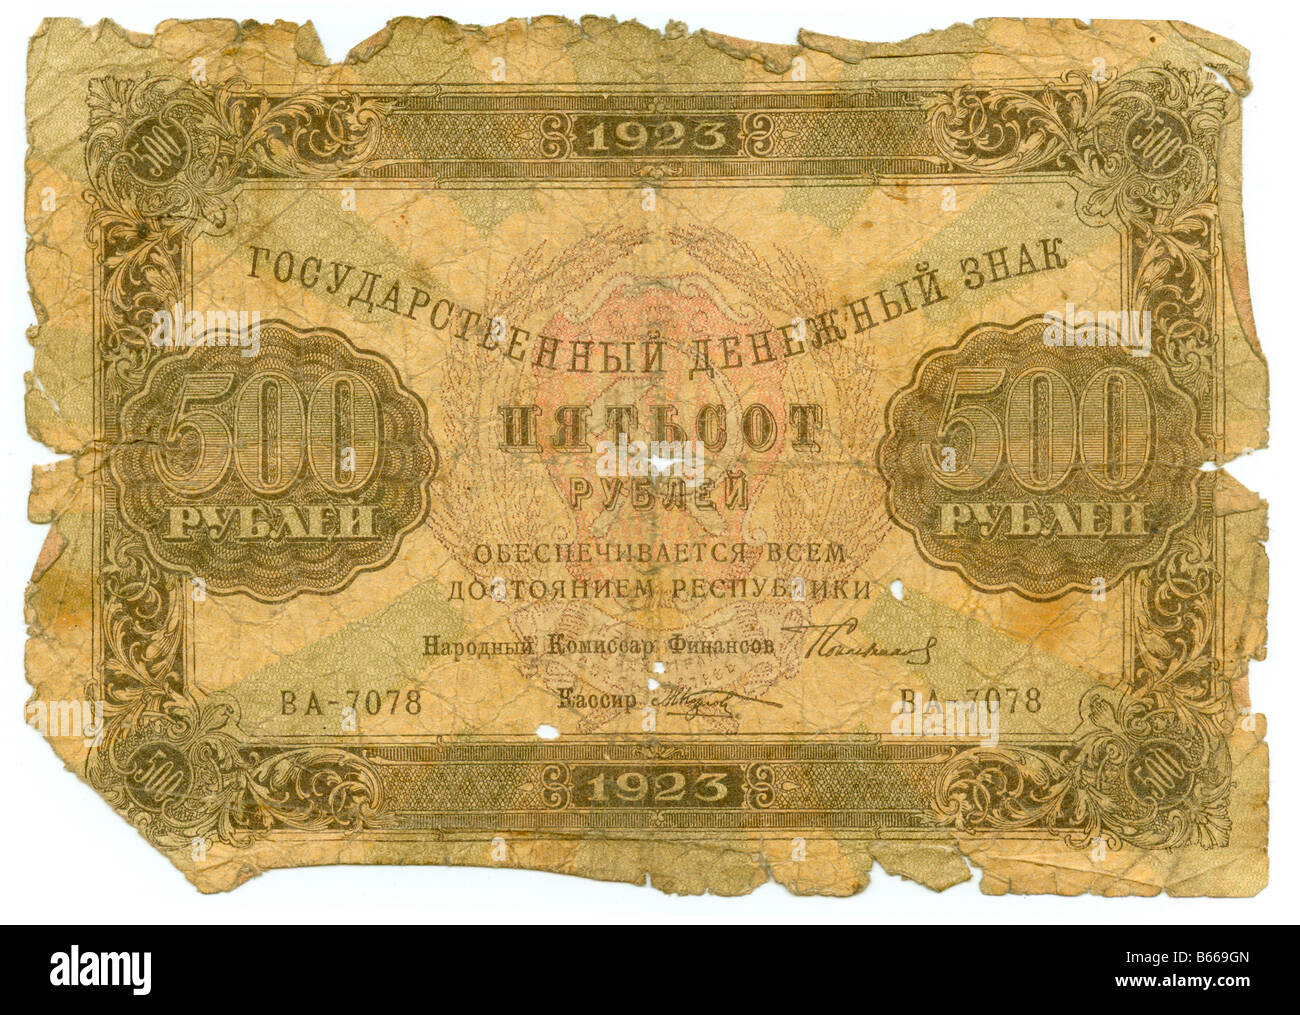 500 Loi de RSFSR, rouble shabby jaunâtre du papier déchiré, biscuit motif riche Banque D'Images